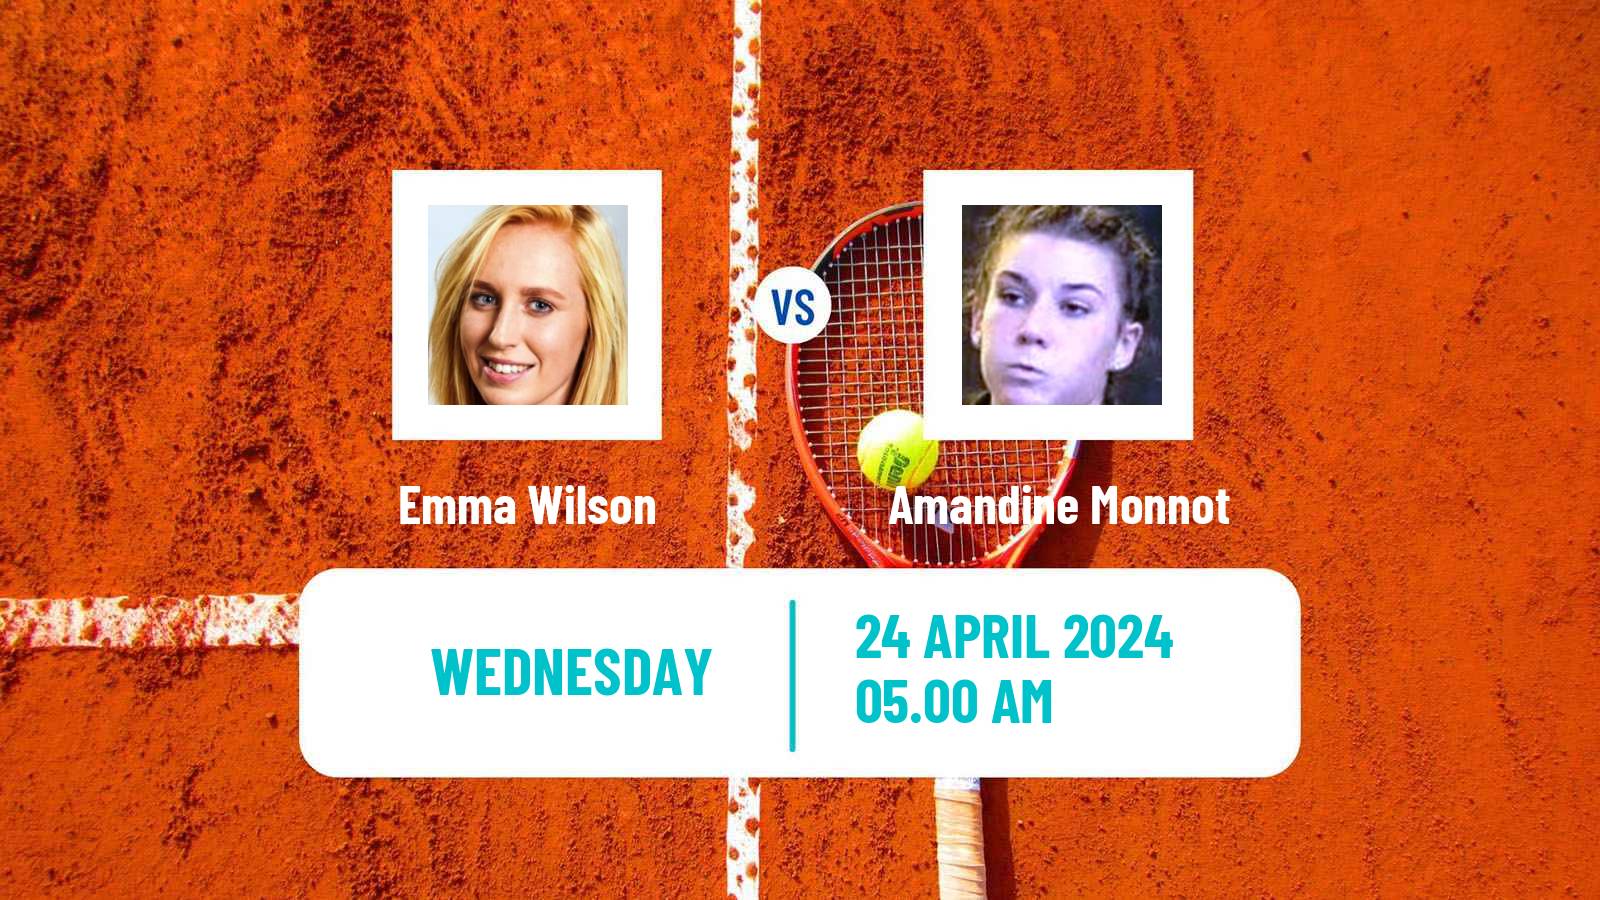 Tennis ITF W35 Nottingham Women Emma Wilson - Amandine Monnot